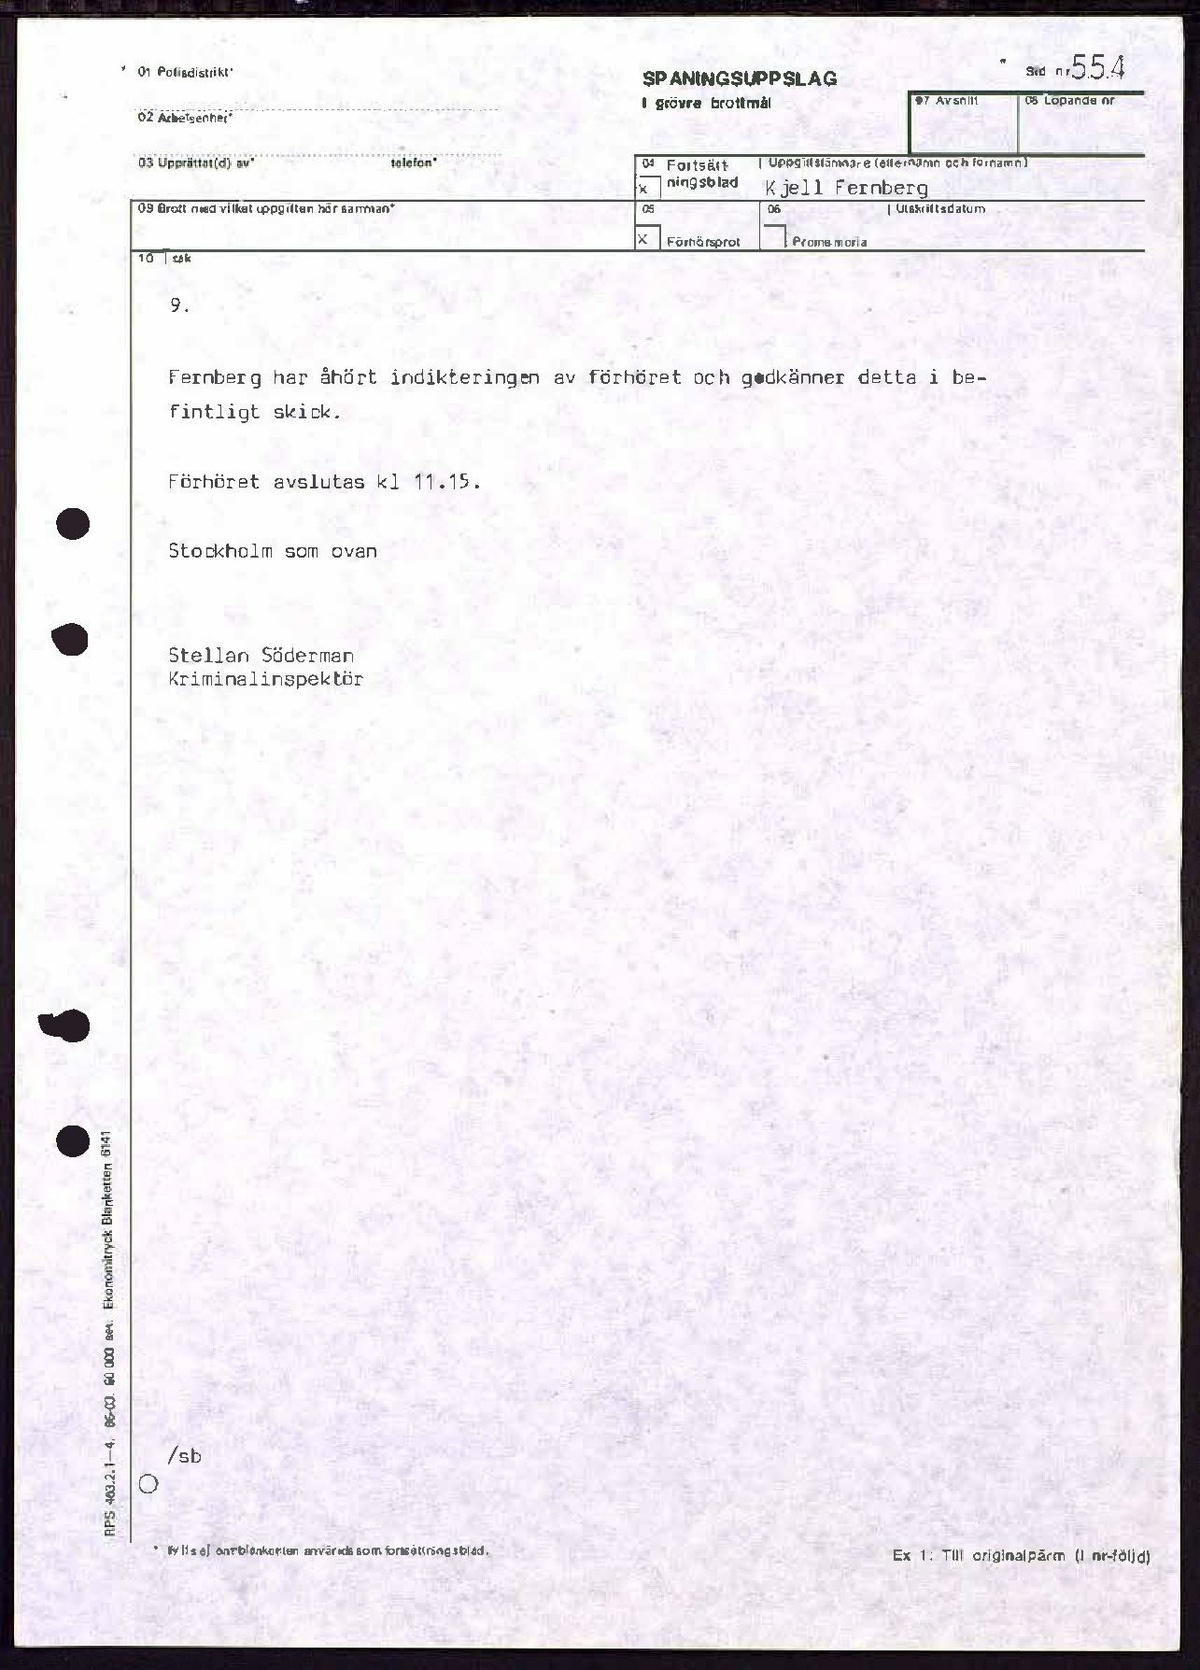 Pol-1989-01-30 1101 KB10393-05-E Kjell Fernberg.pdf